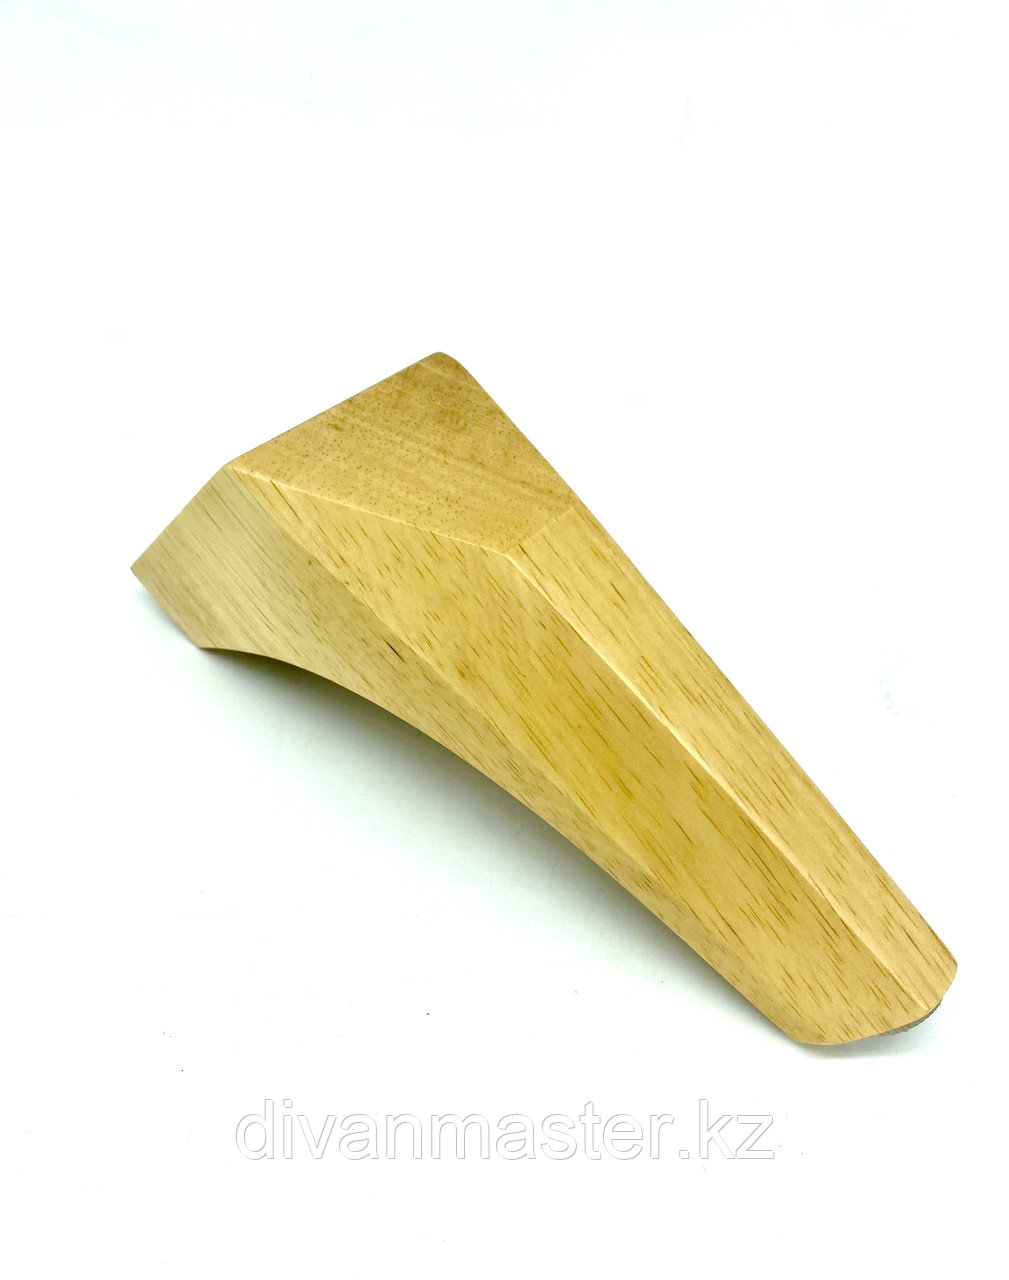 Ножка мебельная, деревянная, с наклоном 15 см, натуральный цвет